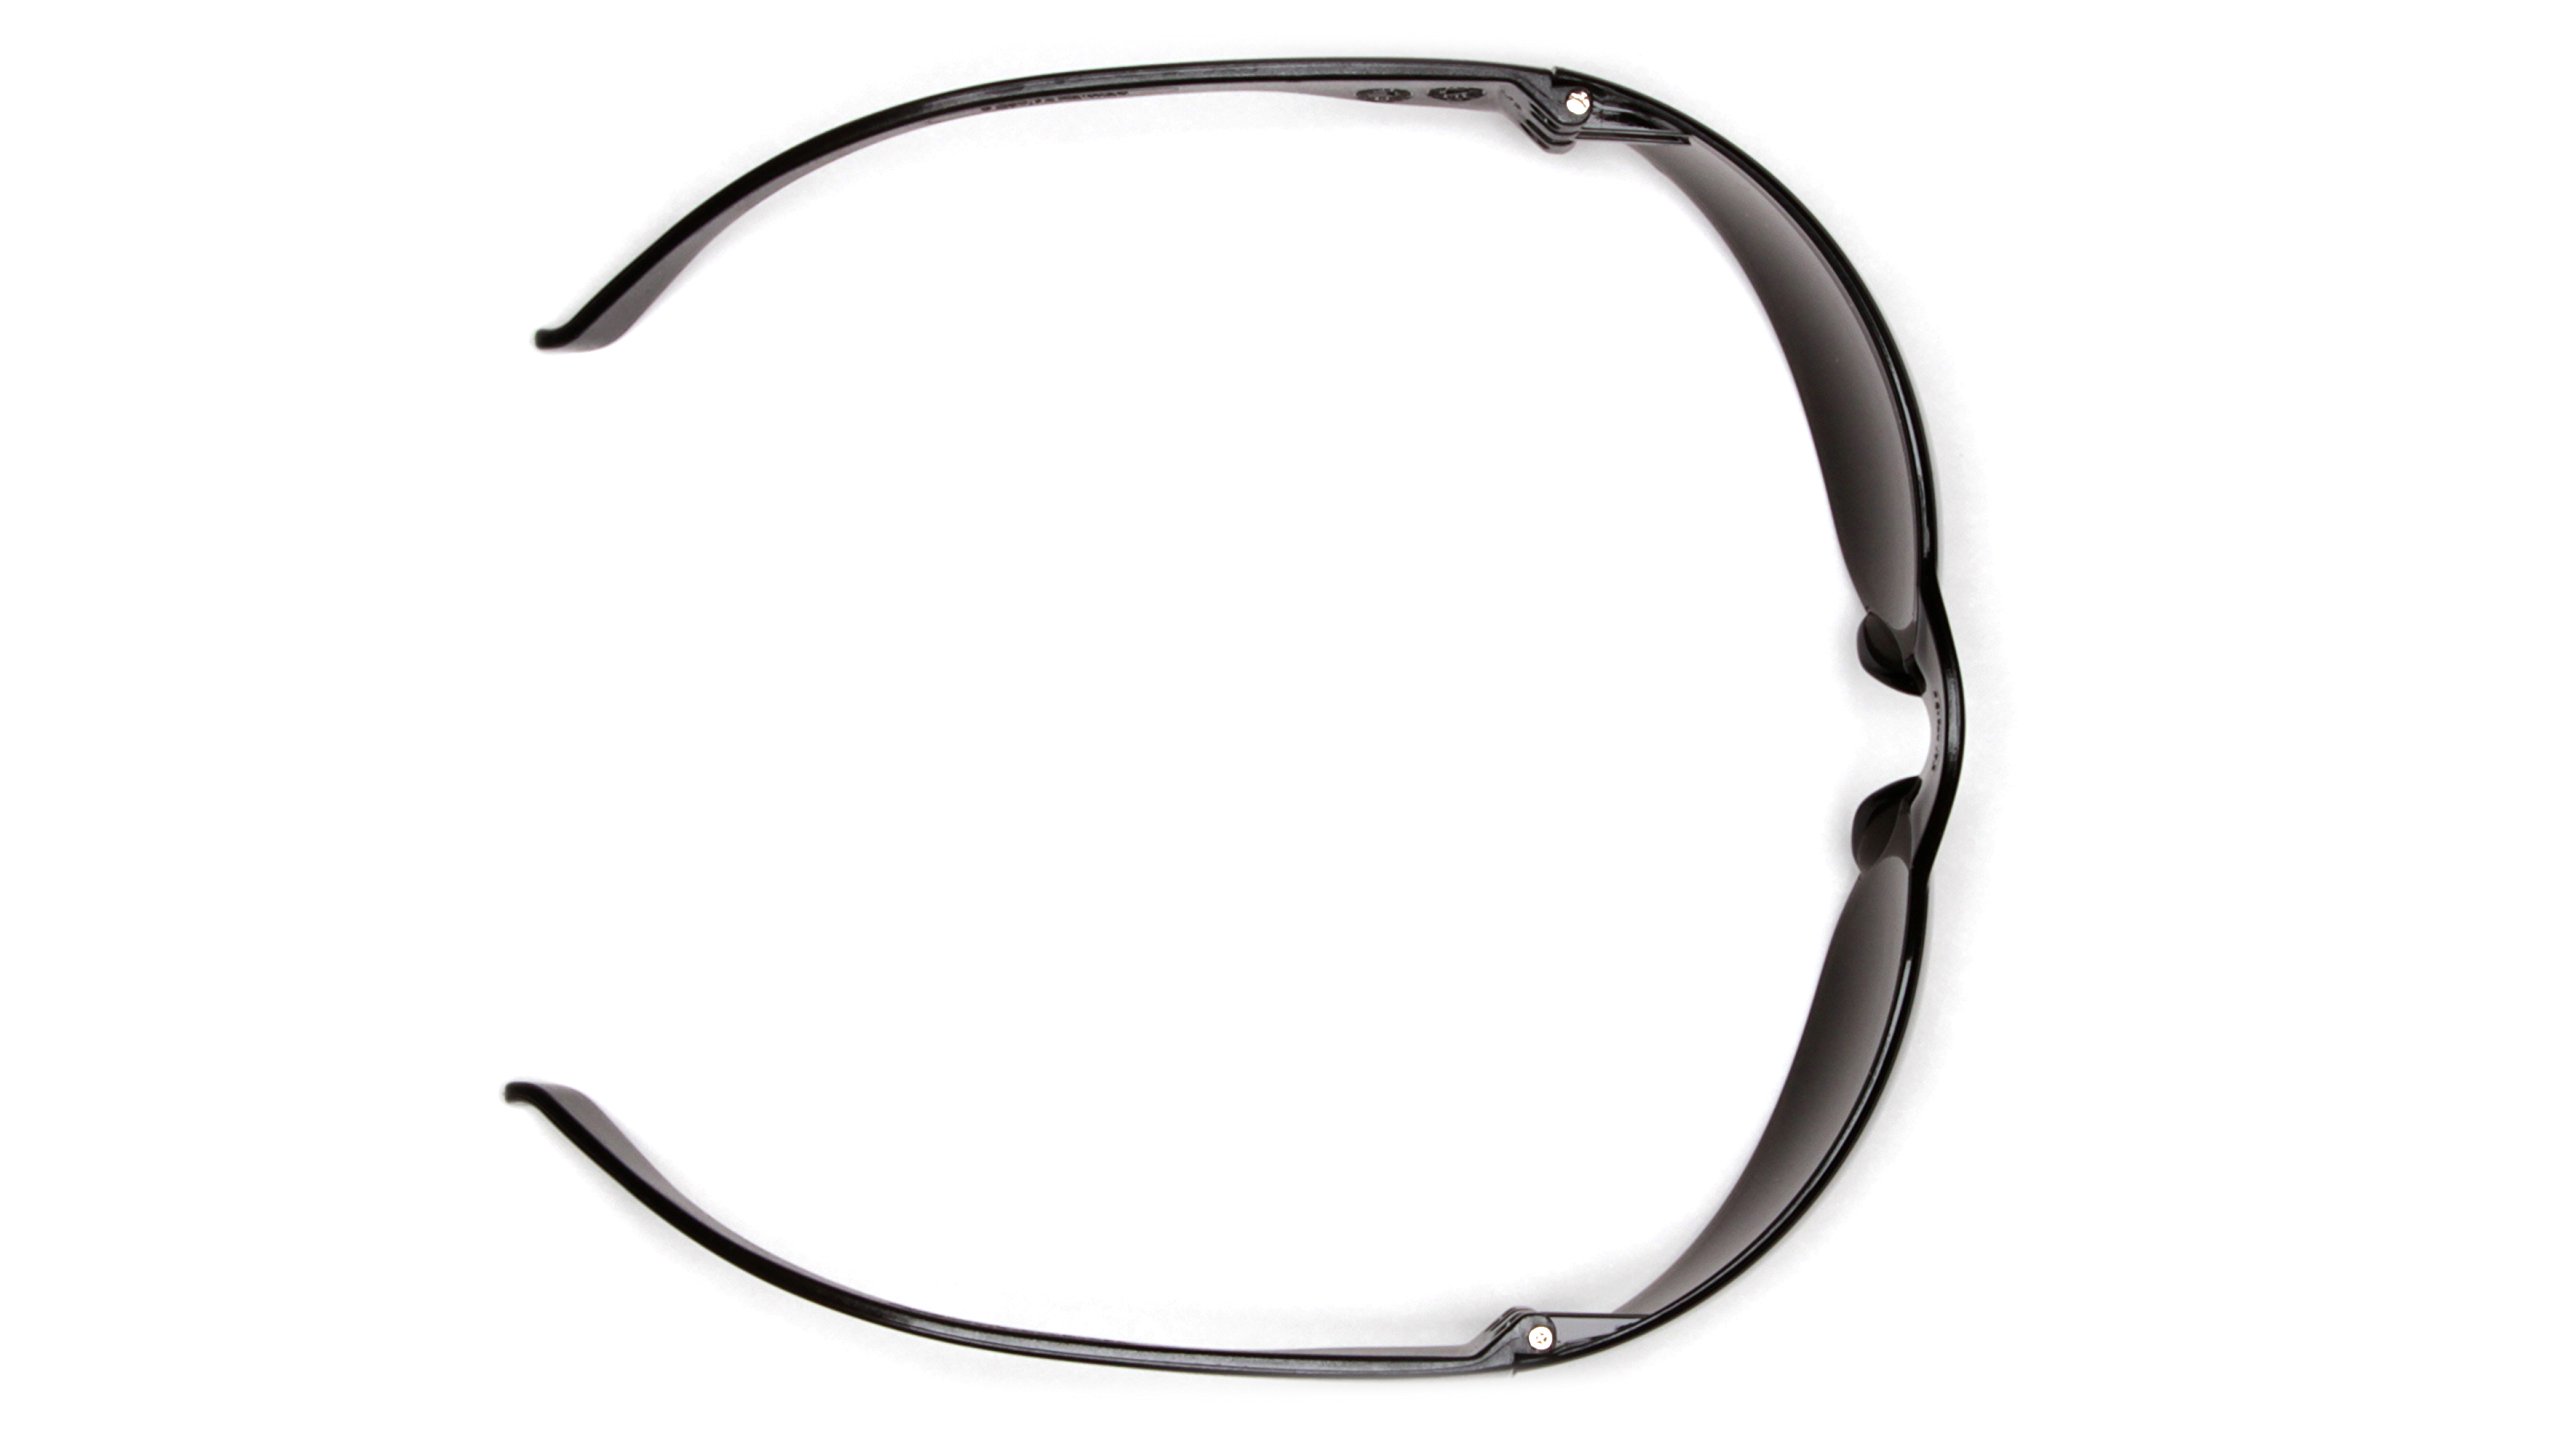 Pyramex Safety Mini Intruder Safety Eyewear, Clear Frame / Clear-Hardcoated Anti-Fog Lens